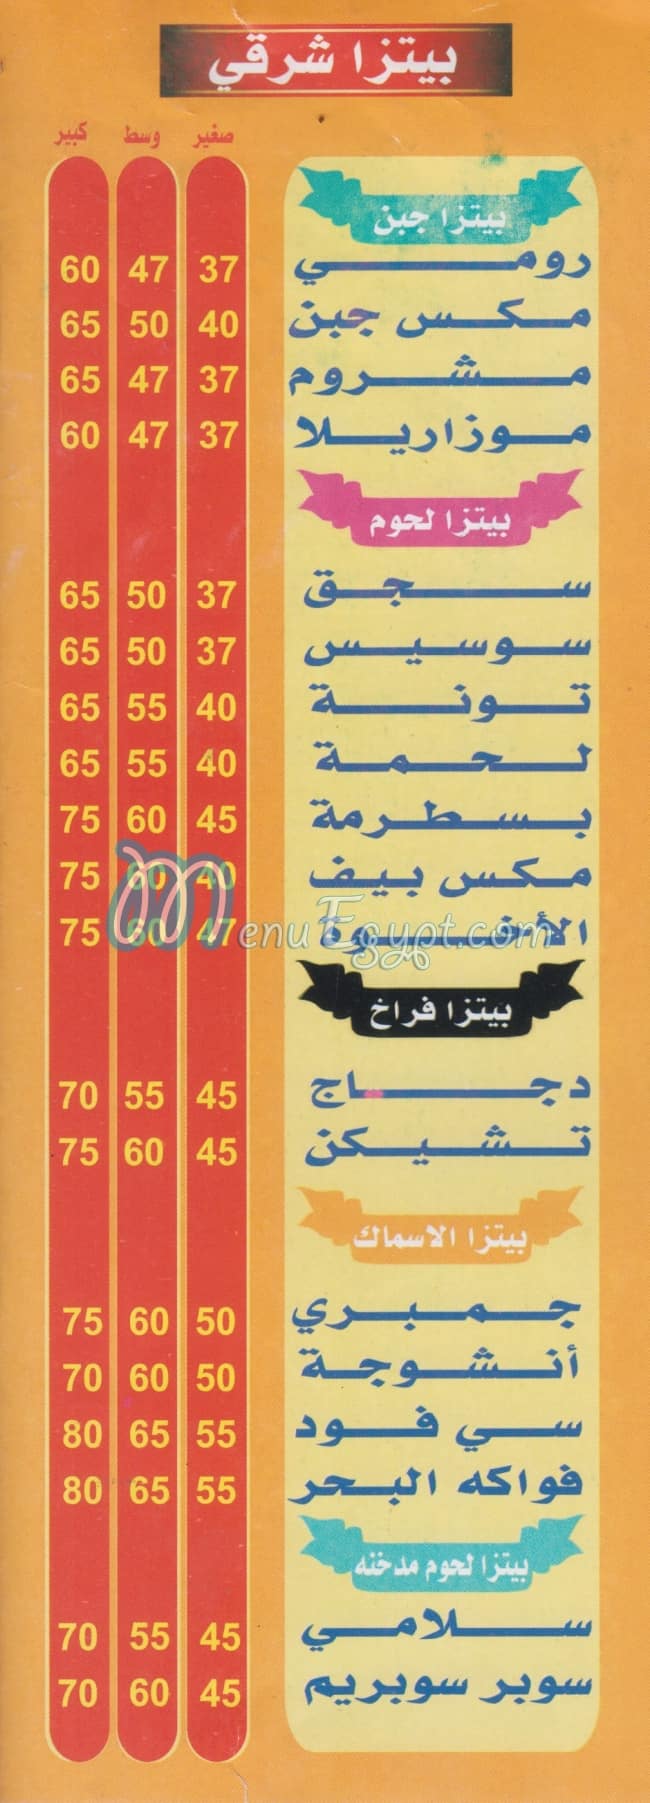 KOSHARY &PIZZA  ALEKHWAA menu Egypt 1